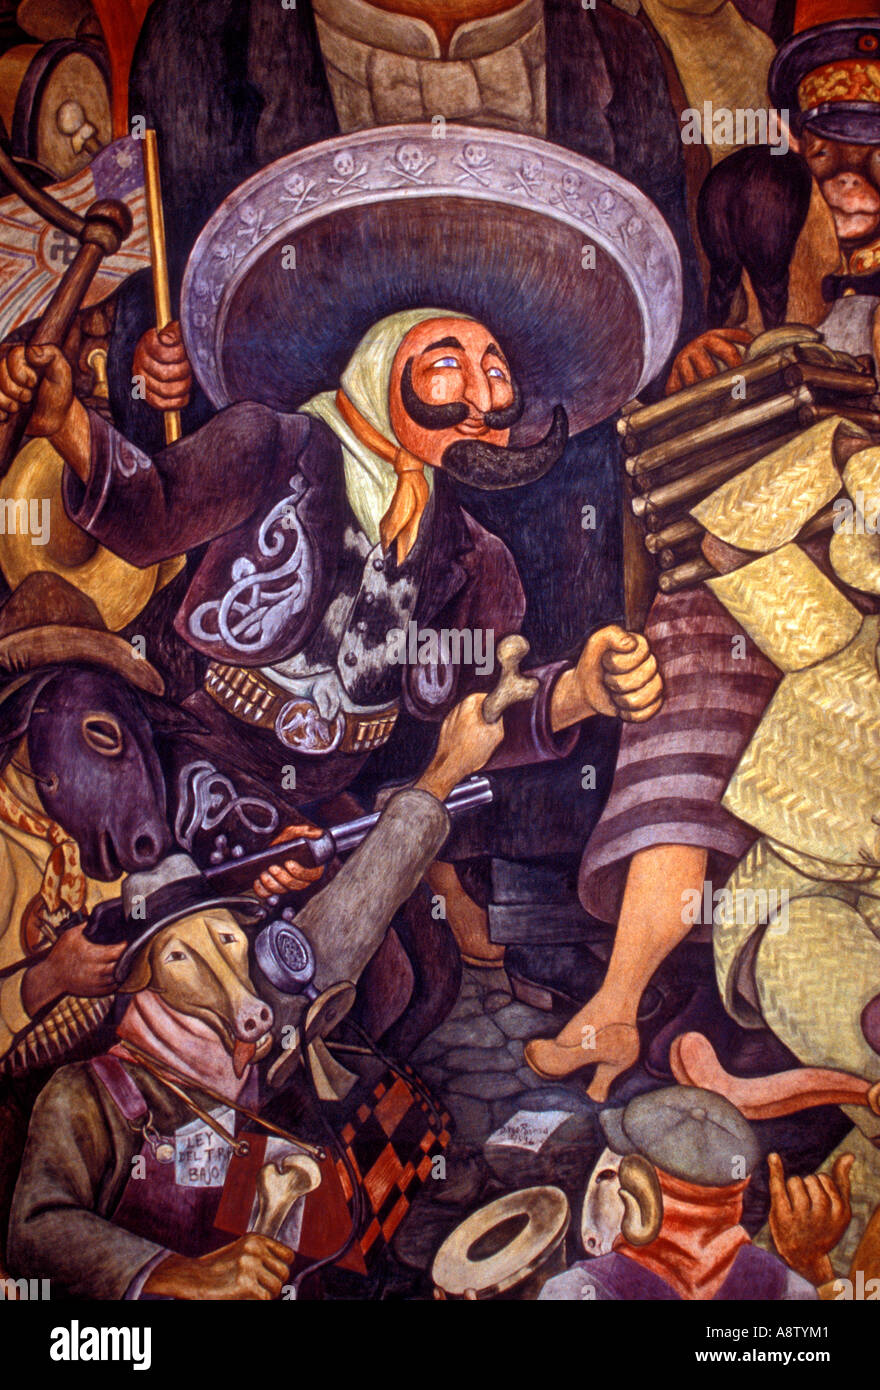 La dictatura, Carnaval de la vie mexicaine dictature, fresque, peinture murale de Diego Rivera, Palacio de Bellas Artes, Musée des beaux-arts, la ville de Mexico, Mexique Banque D'Images